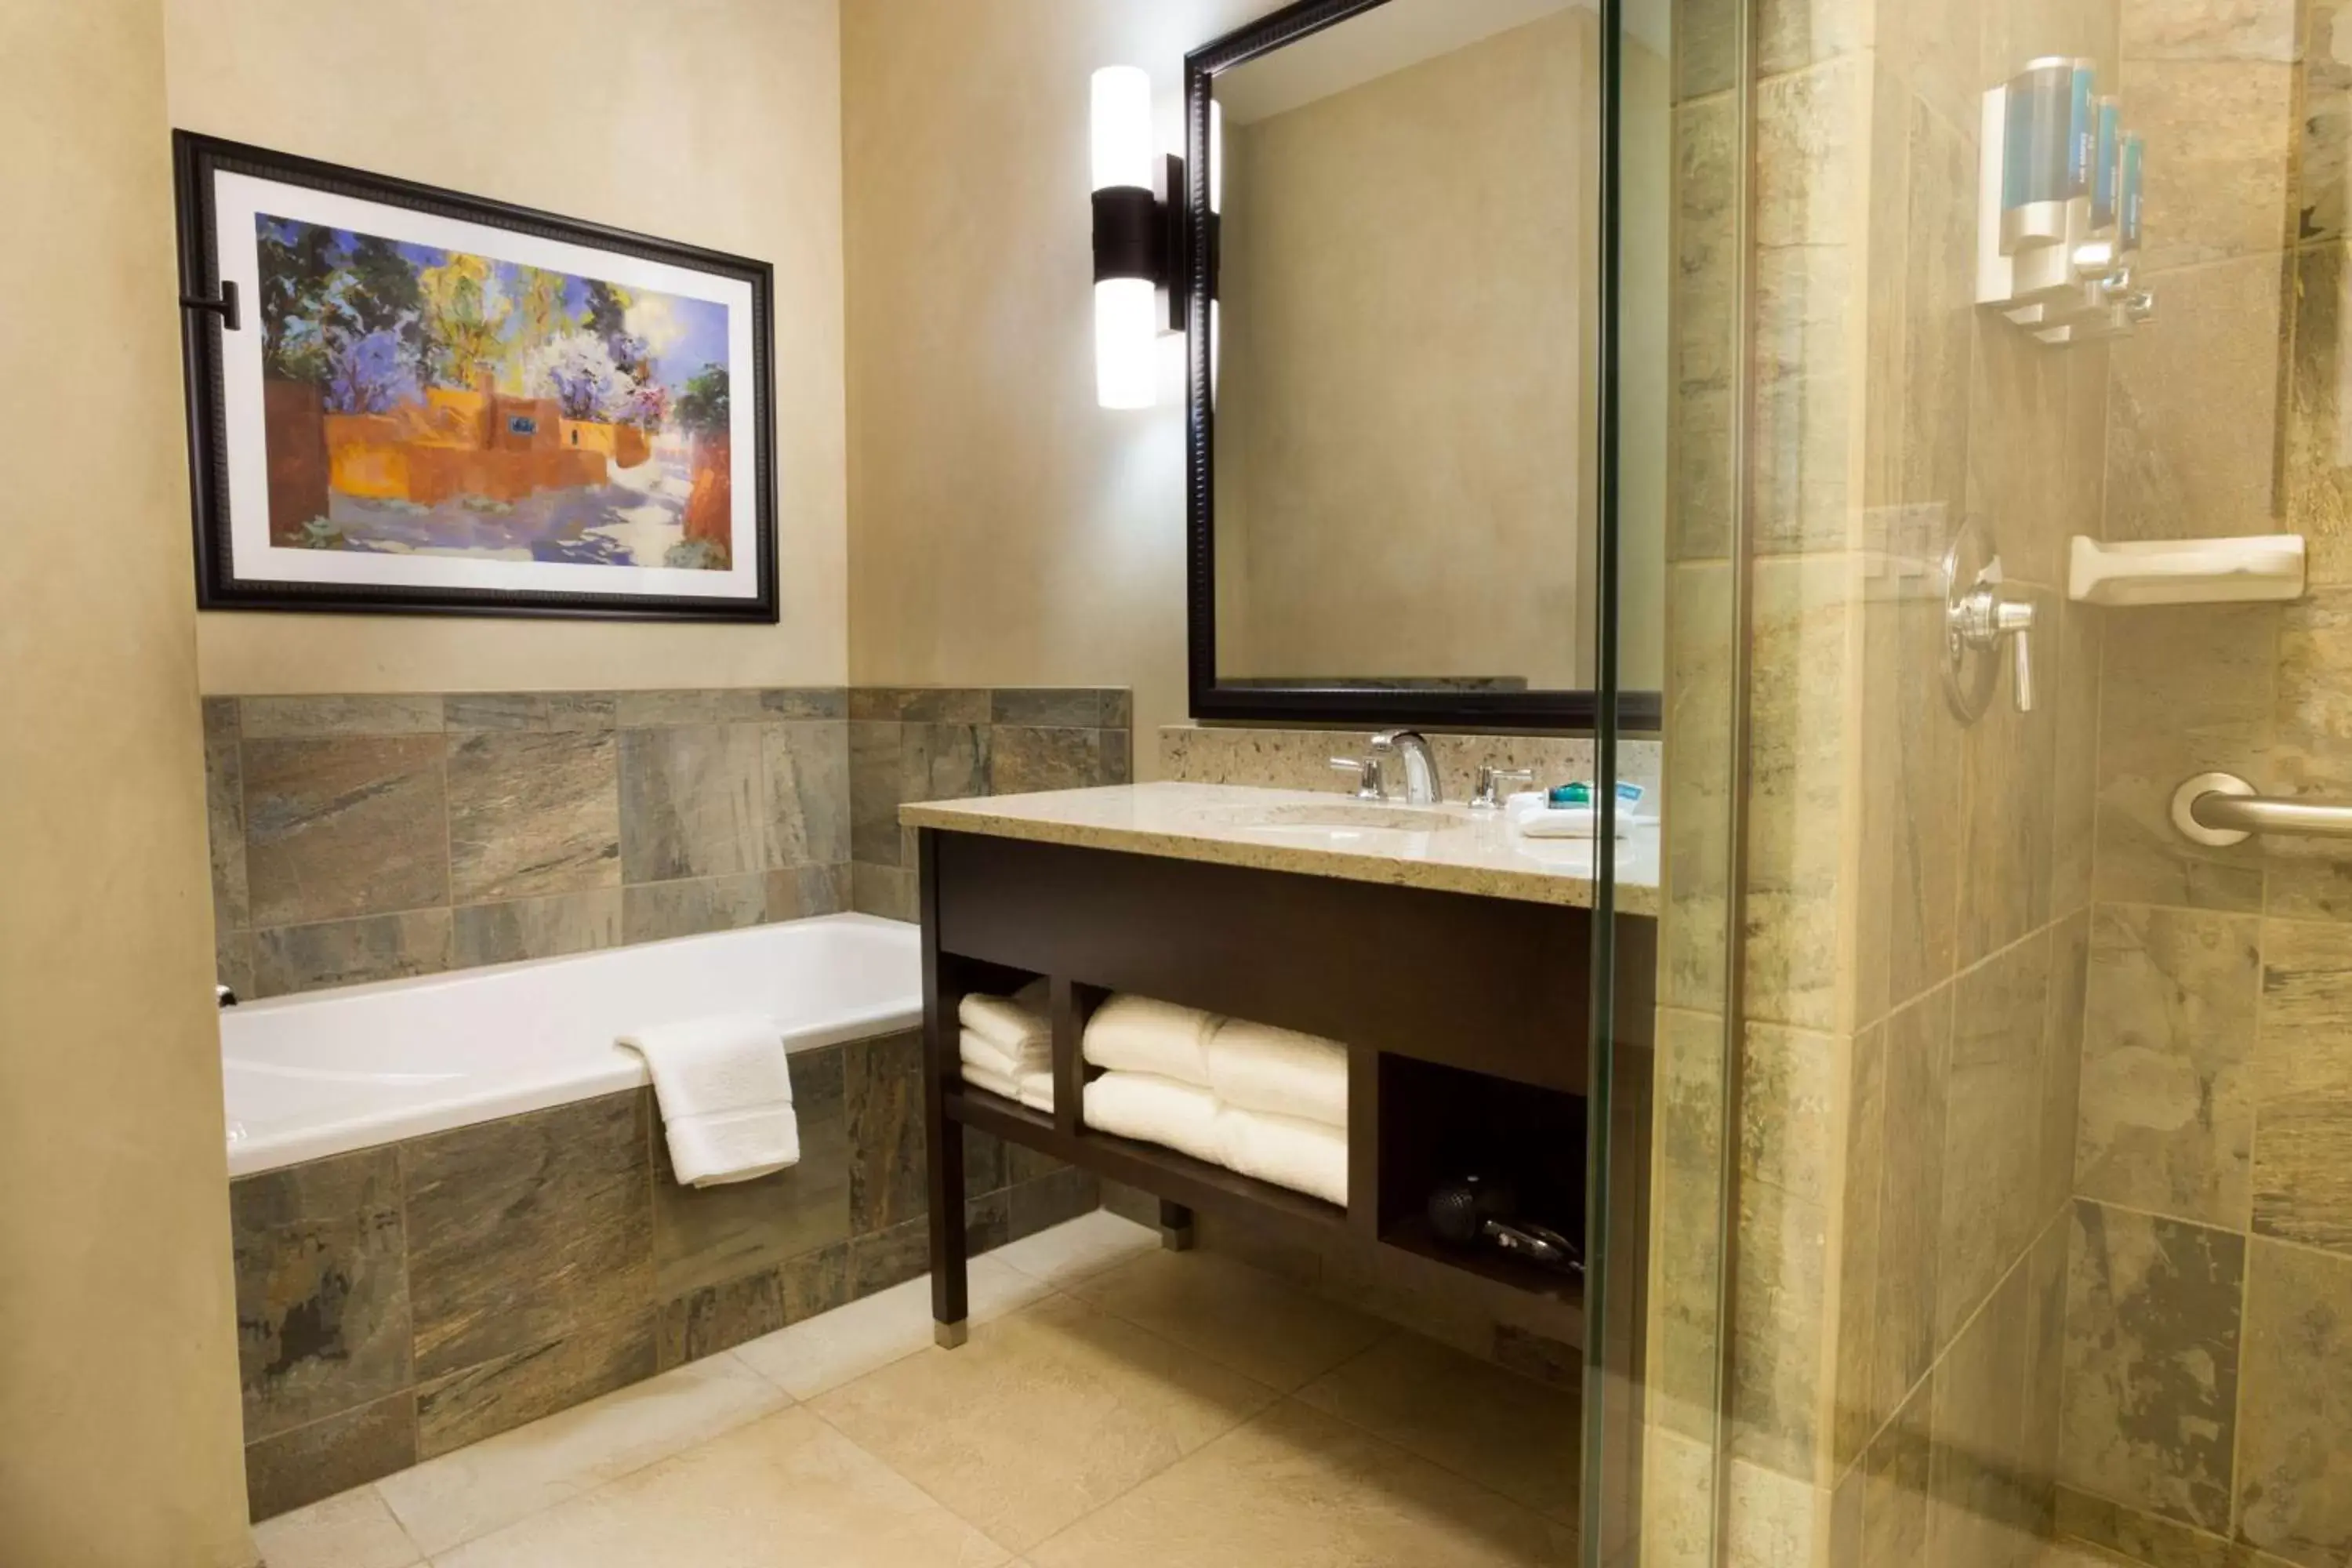 Bathroom in Drury Plaza Hotel in Santa Fe